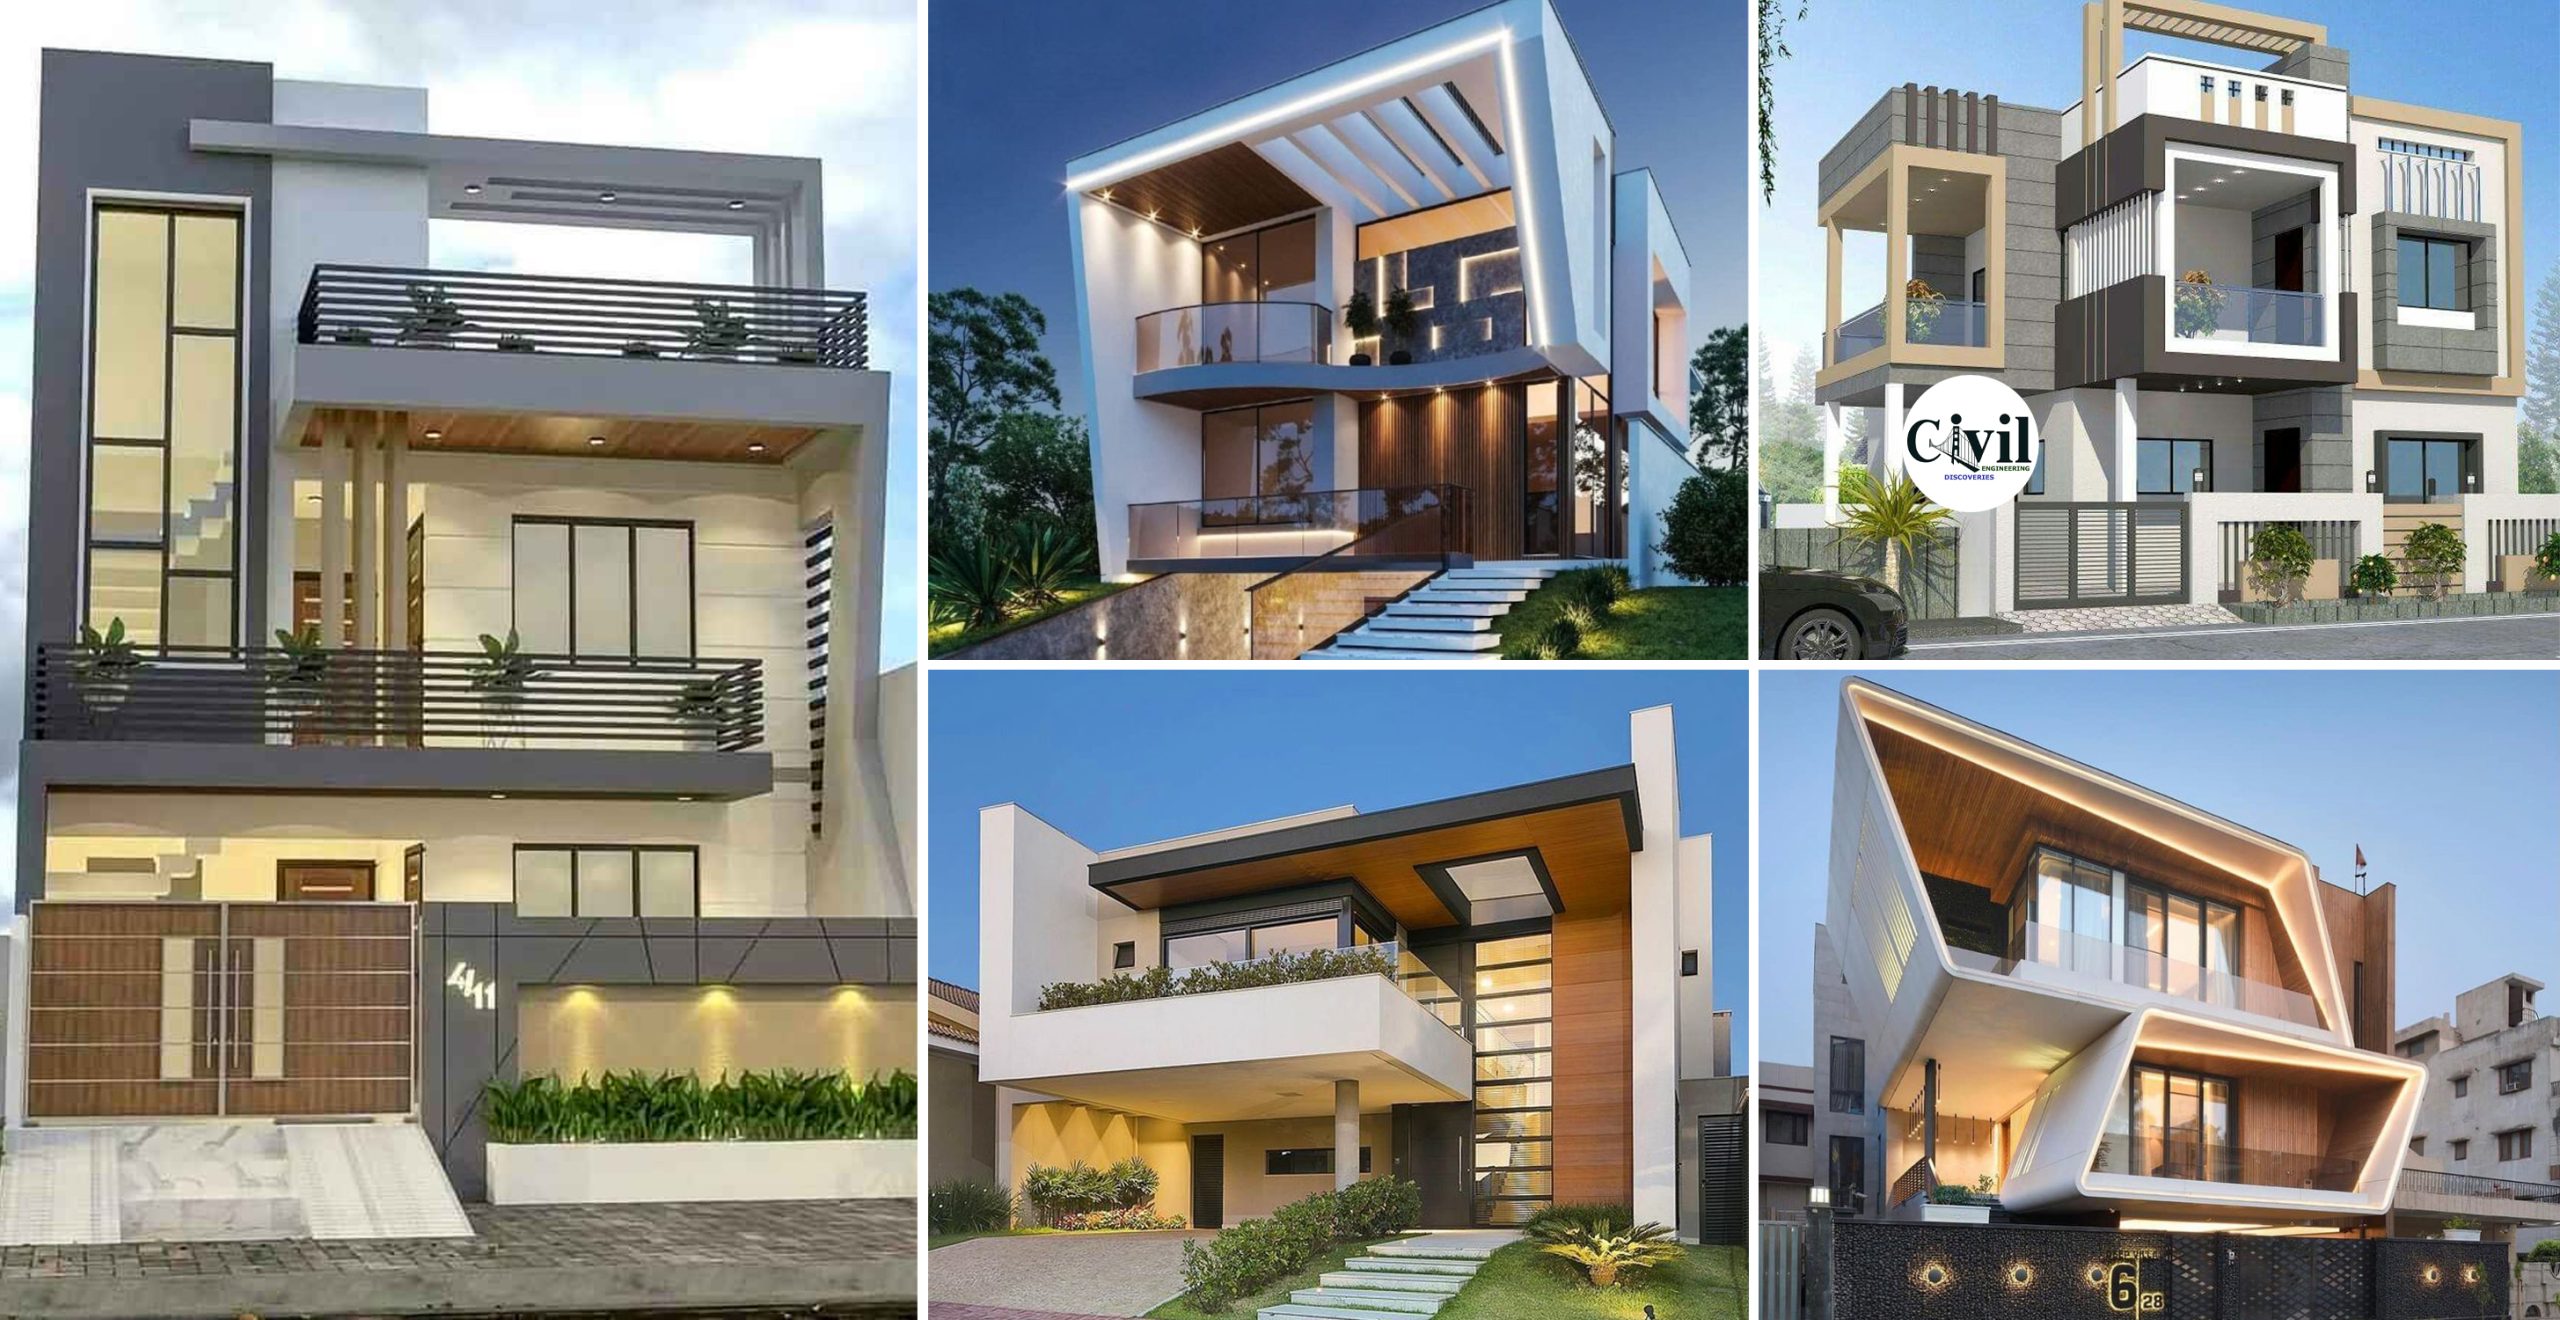 House Facade Ideas Exterior House Designs For Inspiration In 2020 ...